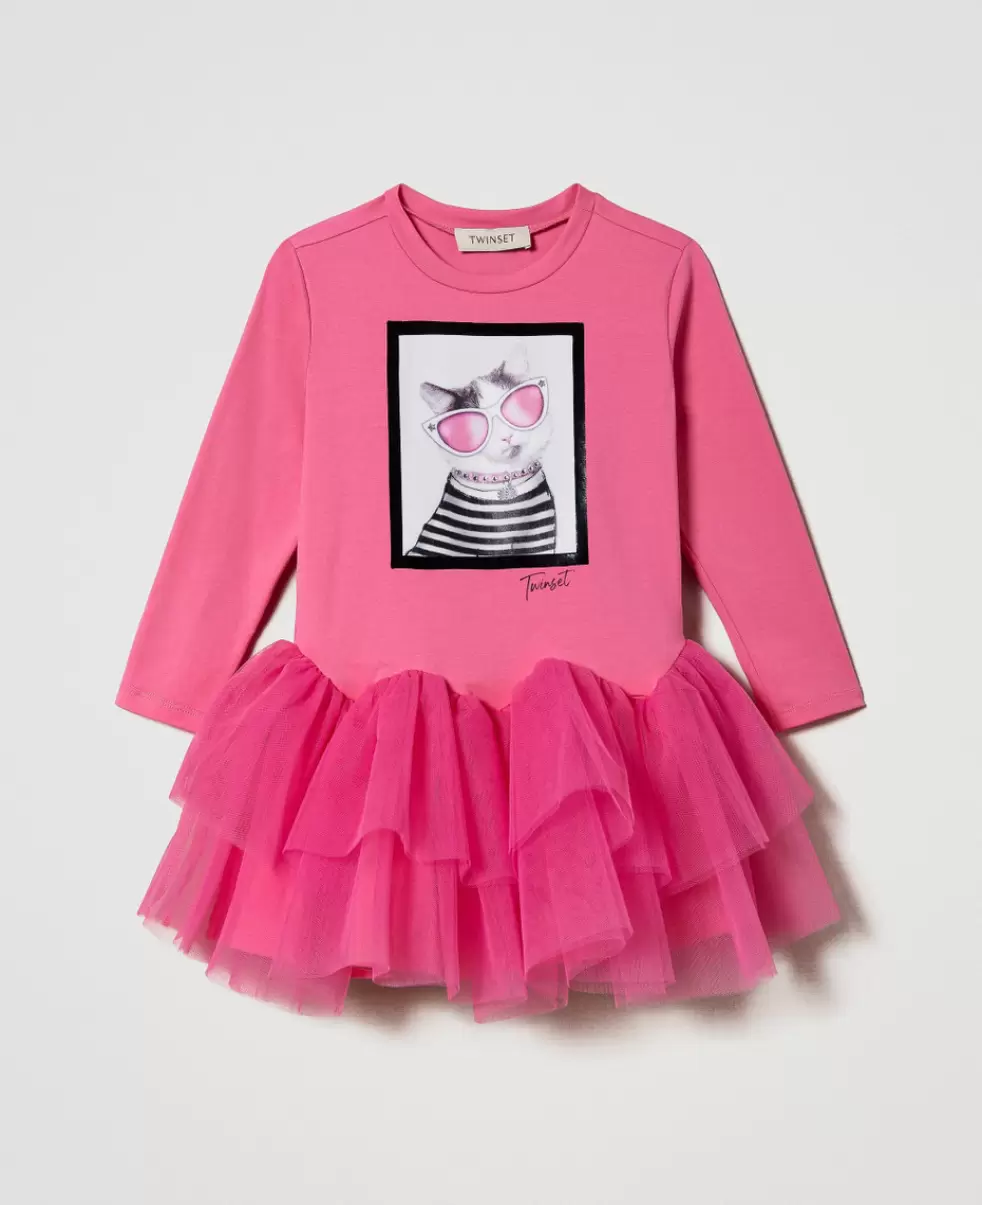 Mode Print Katze Neonpink Kleider Twinset Kurzes Printkleid Mit Tüll Mädchen